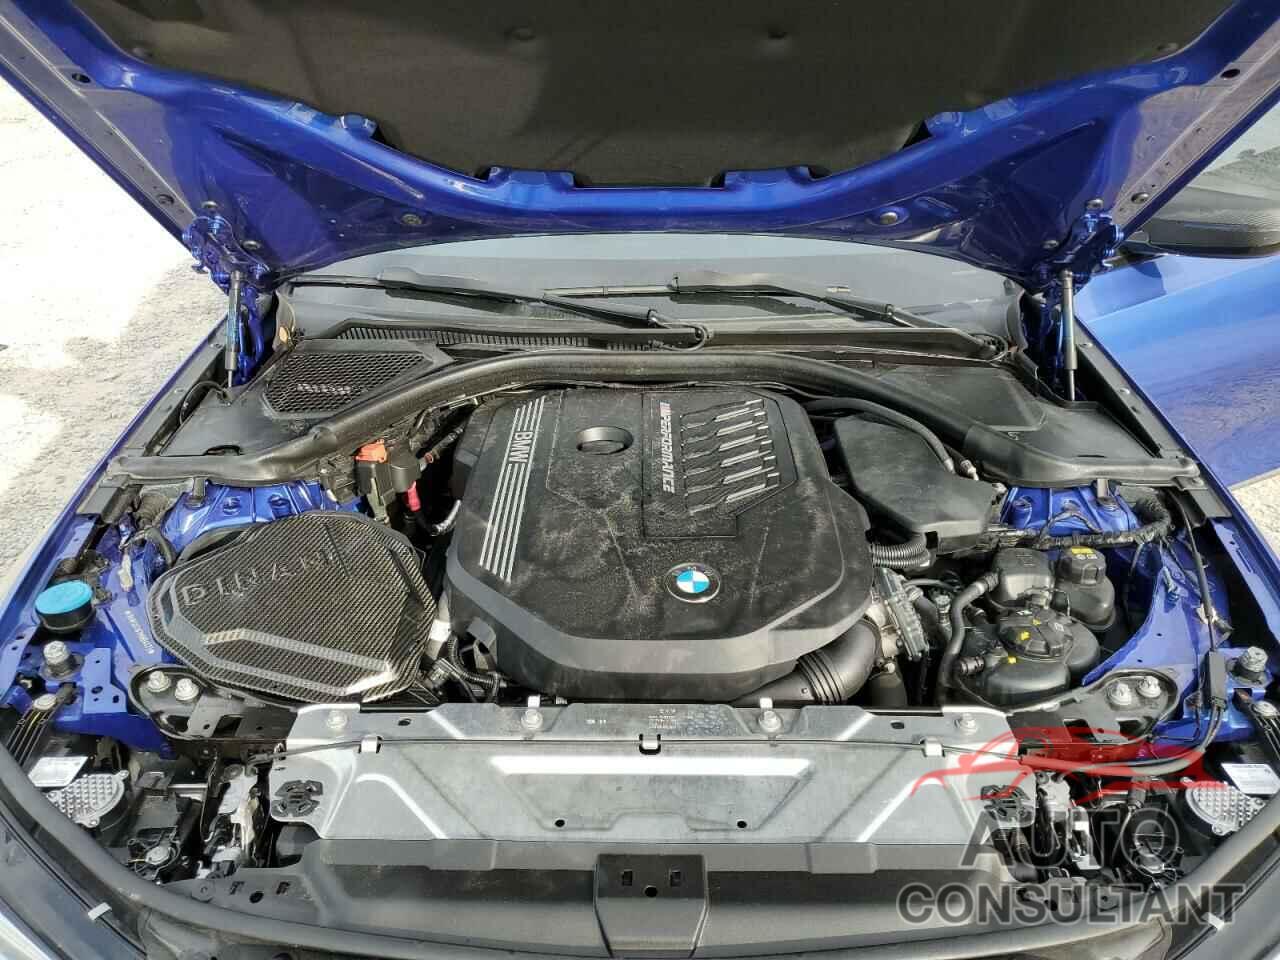 BMW M3 2021 - 3MW5U7J07M8B54473